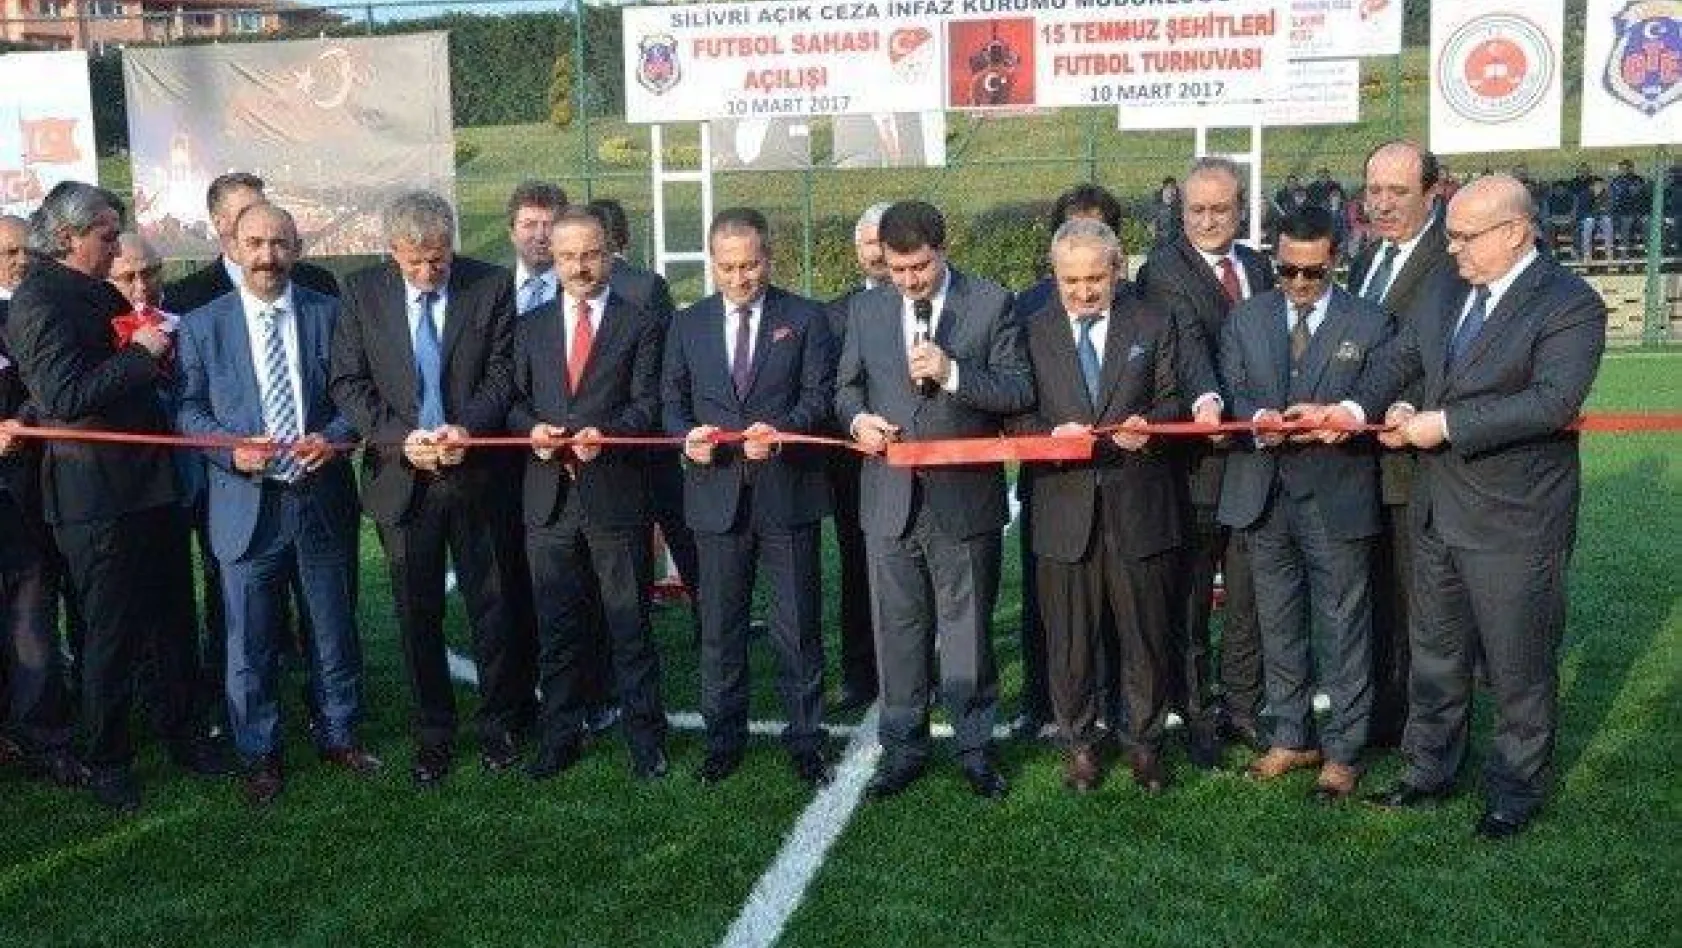 Cezaevinde Futbol Sahası ve Kütüphane Açıldı